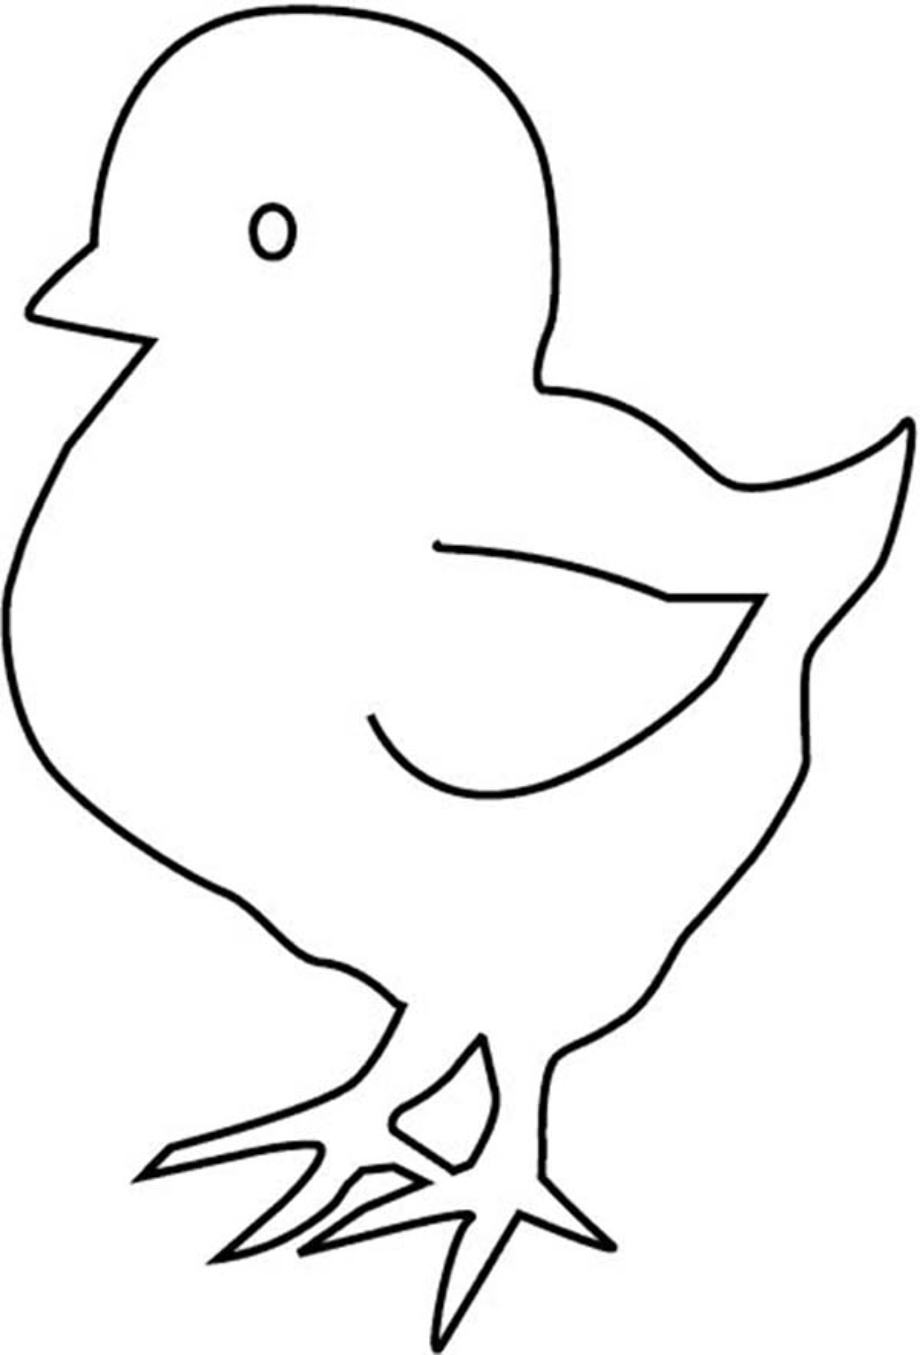 Трафарет цыпленка для рисования